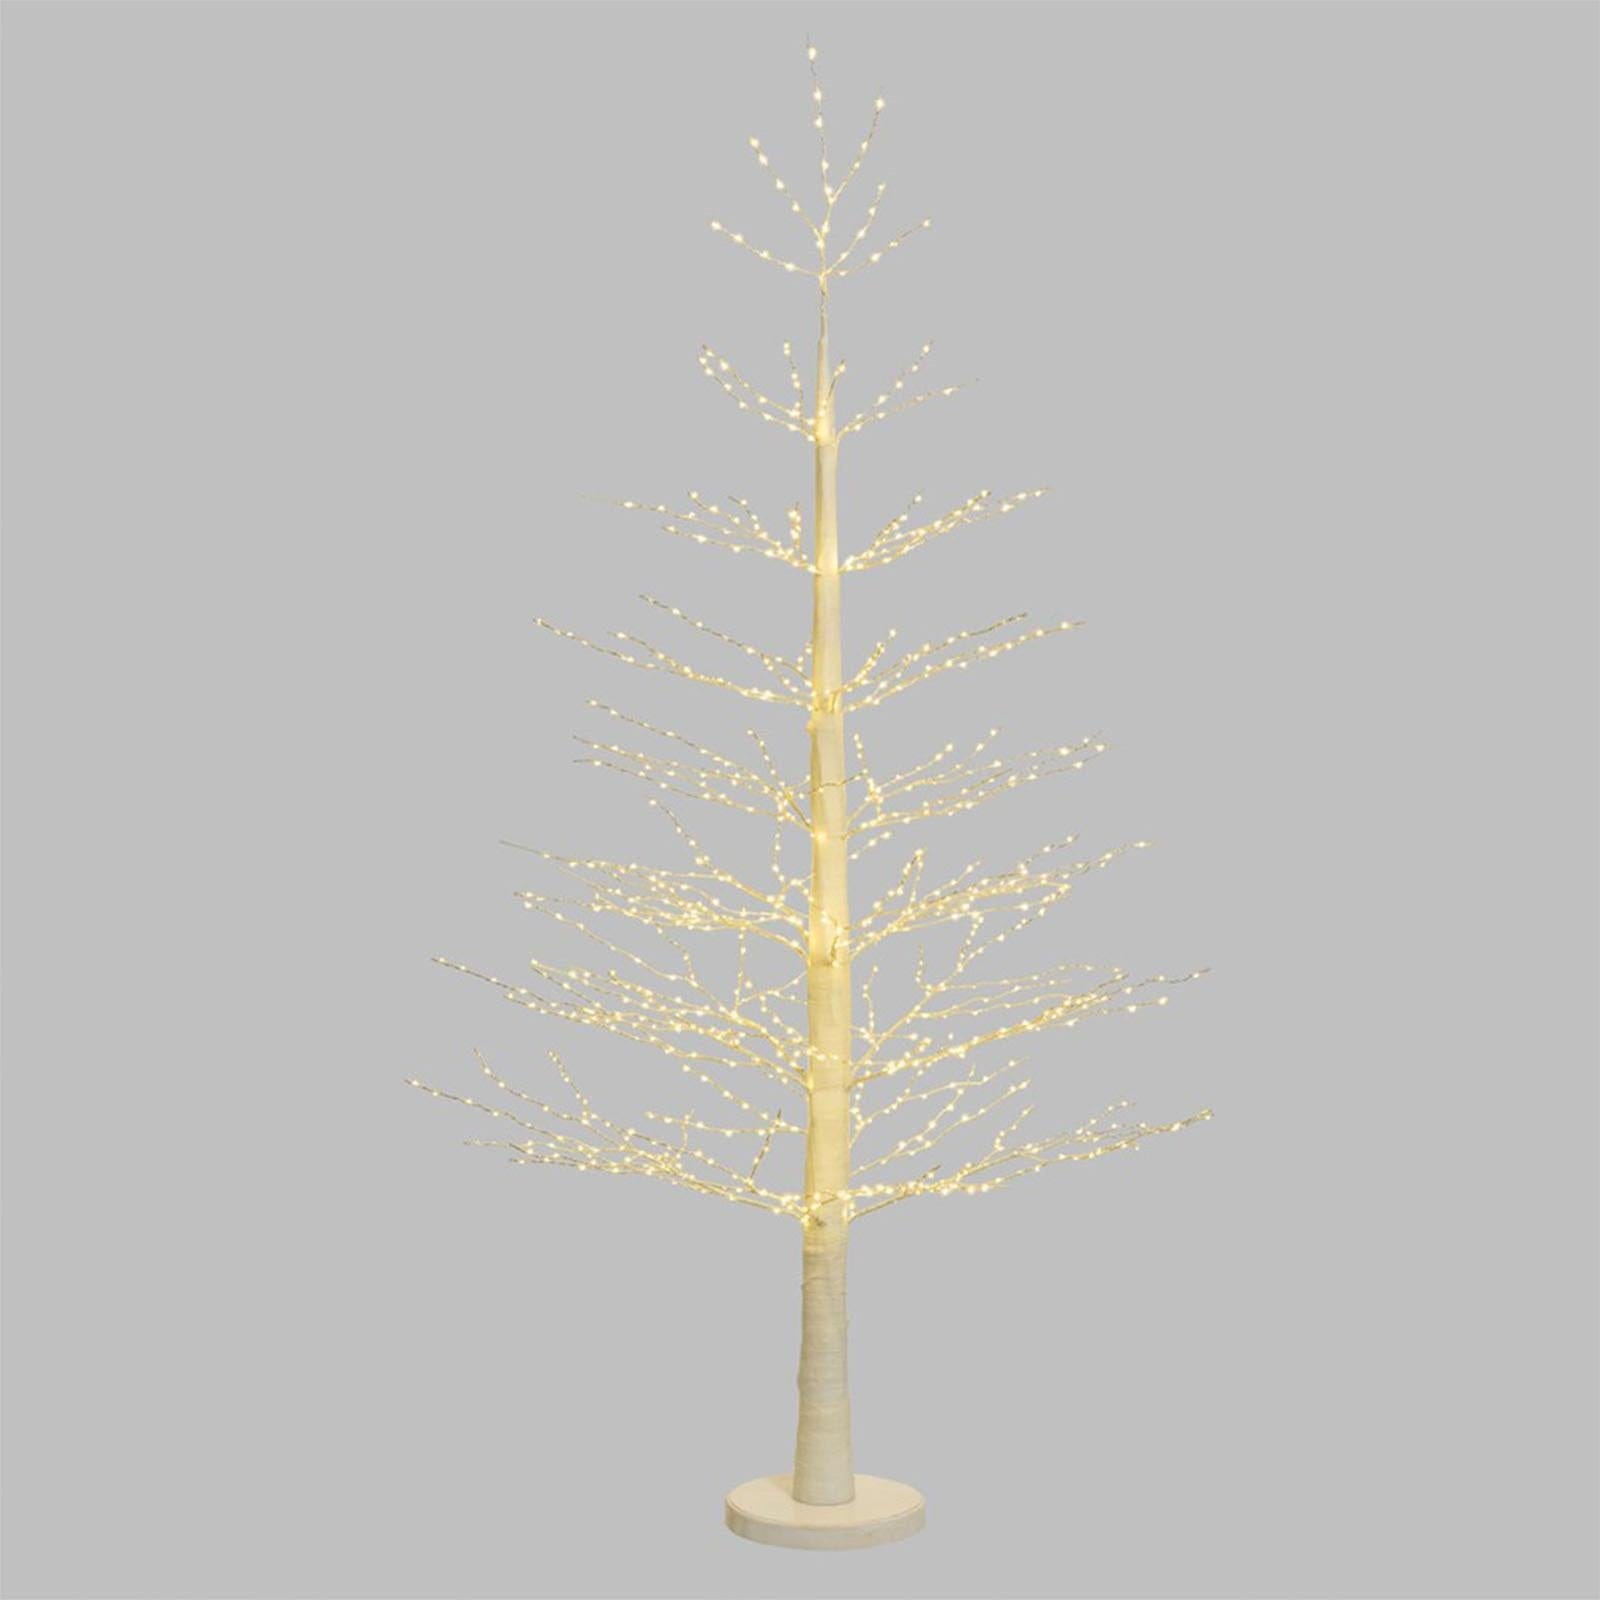 Albero luminoso decorazione natalizia a led luce calda con microled / 190 cm  / Bianco